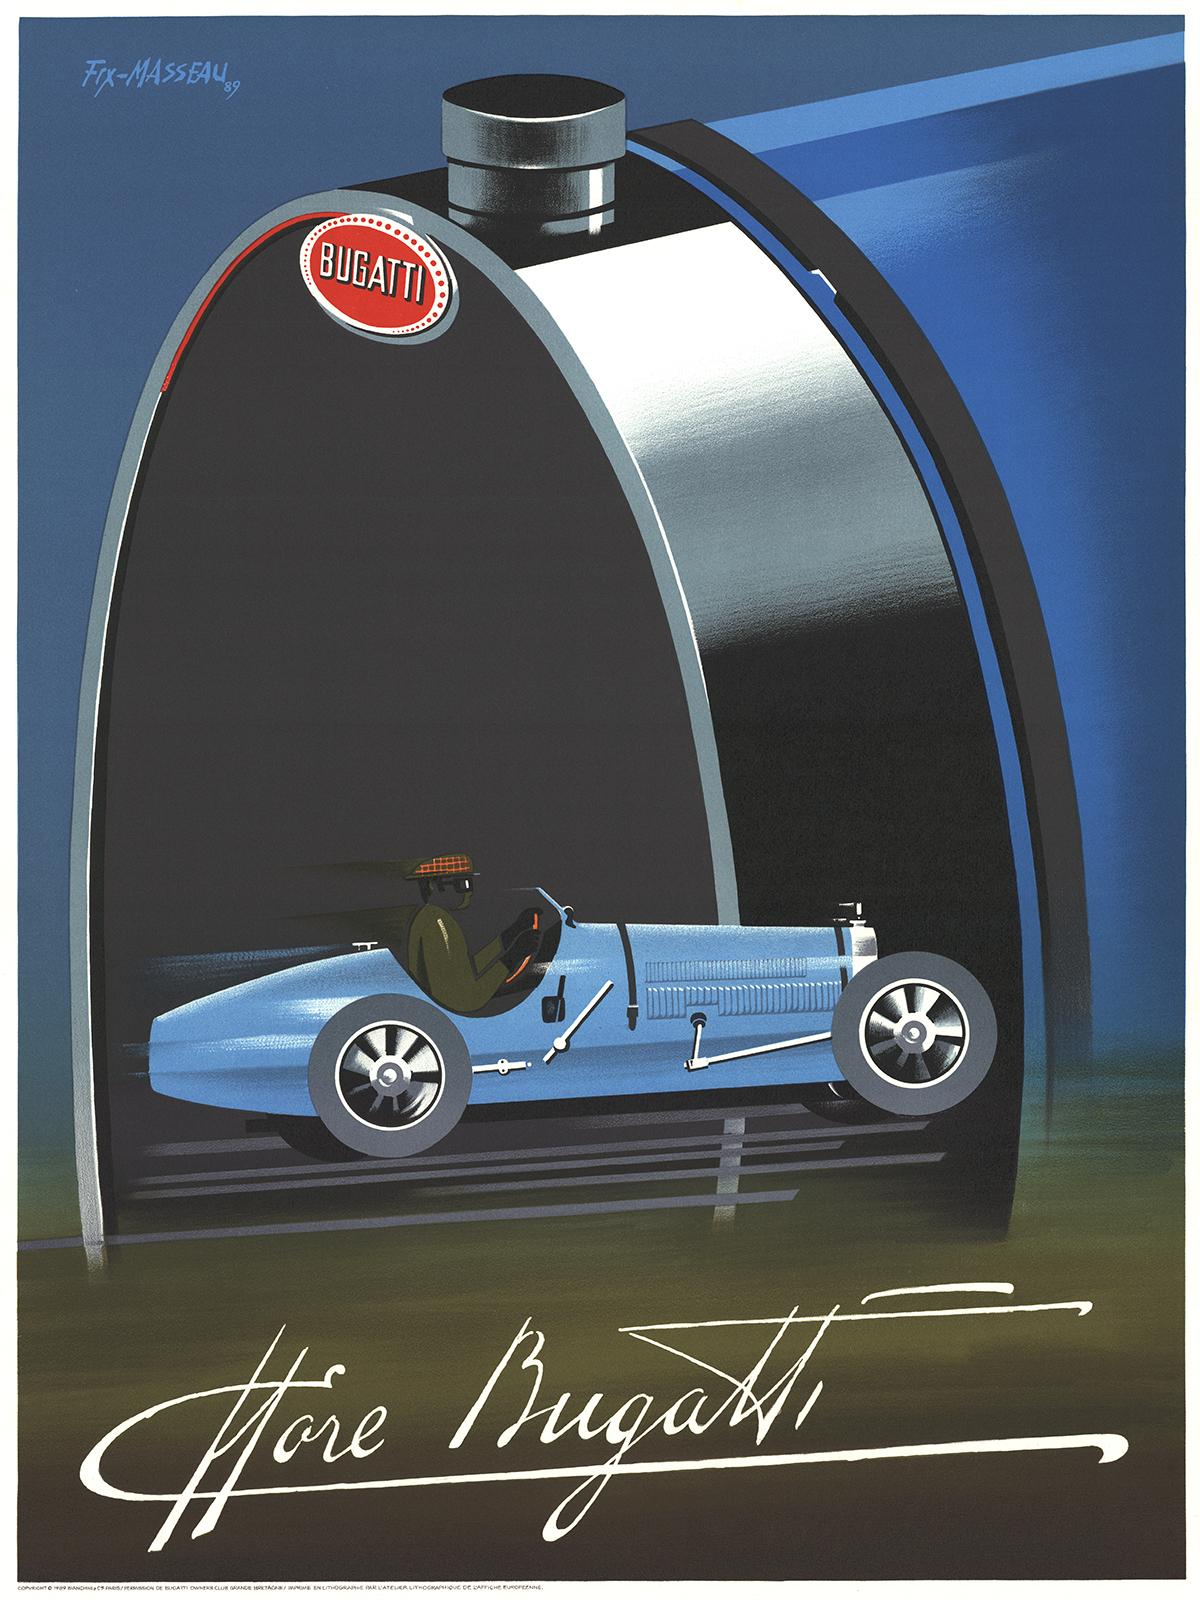 Pierre Fix-Masseau-Bugatti-31.5" x 23.5"-Lithograph-1989-Art Deco-Blue, Green, Black-retro, vintage, car, blue, race, drive, tour
